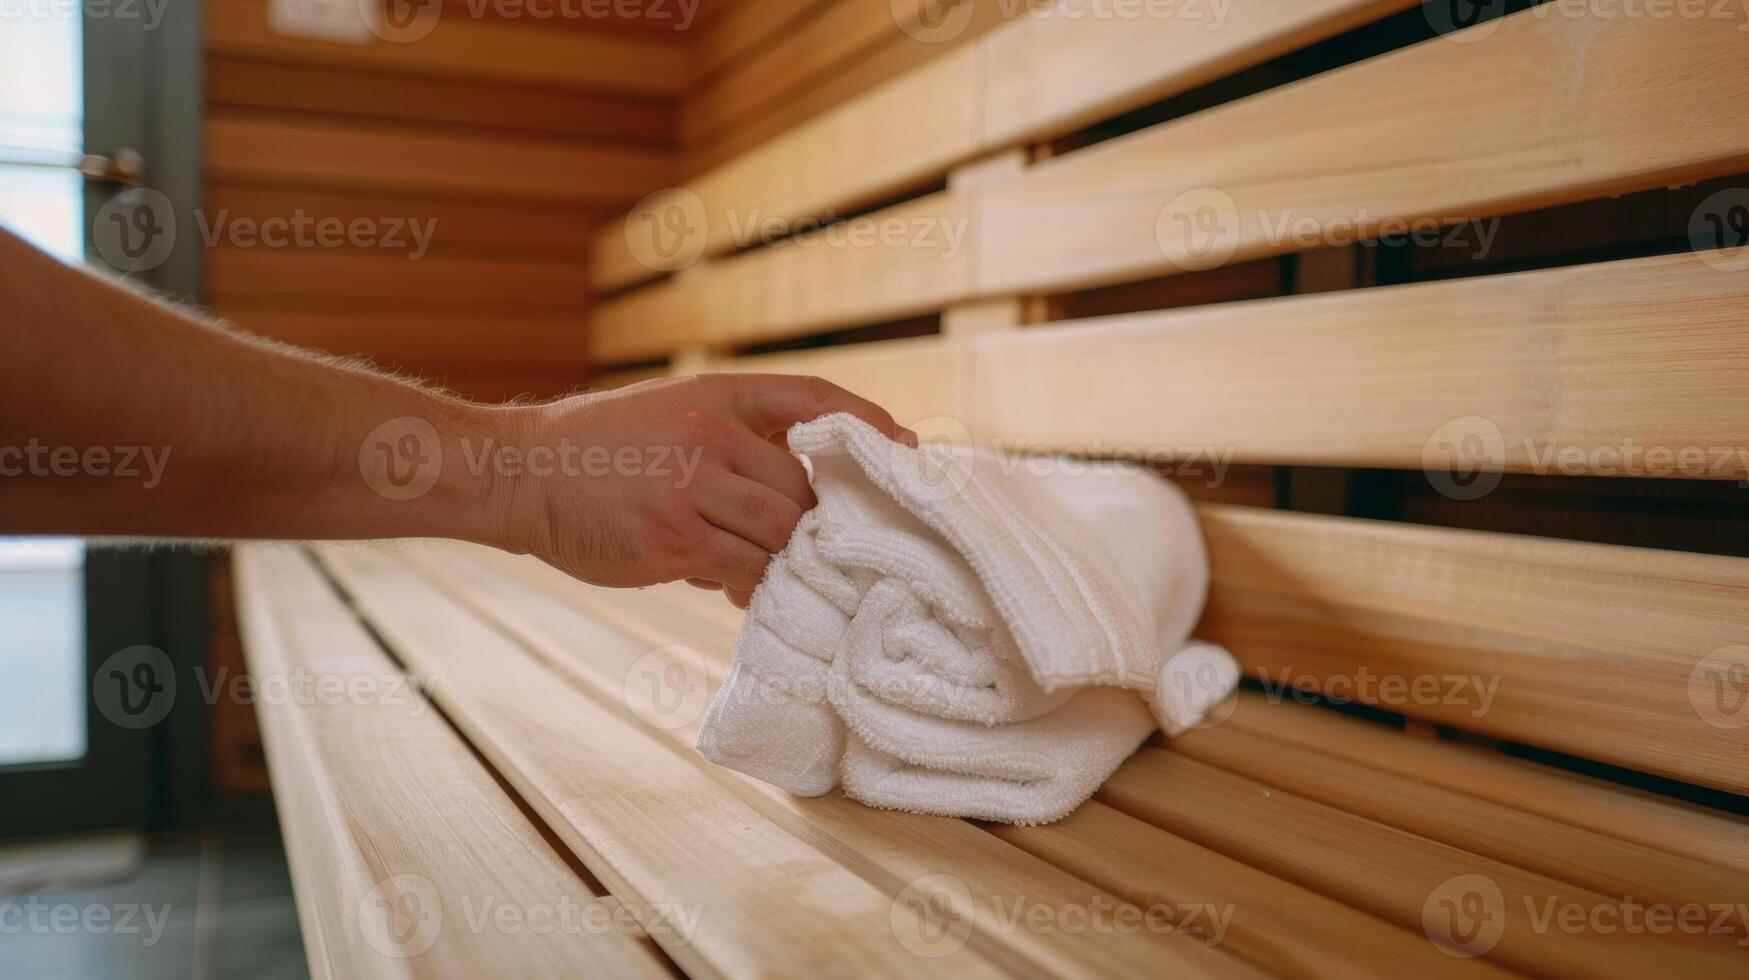 un' persona finitura loro sauna sessione e utilizzando un' fornito asciugamano per pulire giù loro posto a sedere a seguire etichetta linee guida per mantenimento pulizia per il Il prossimo utente. foto